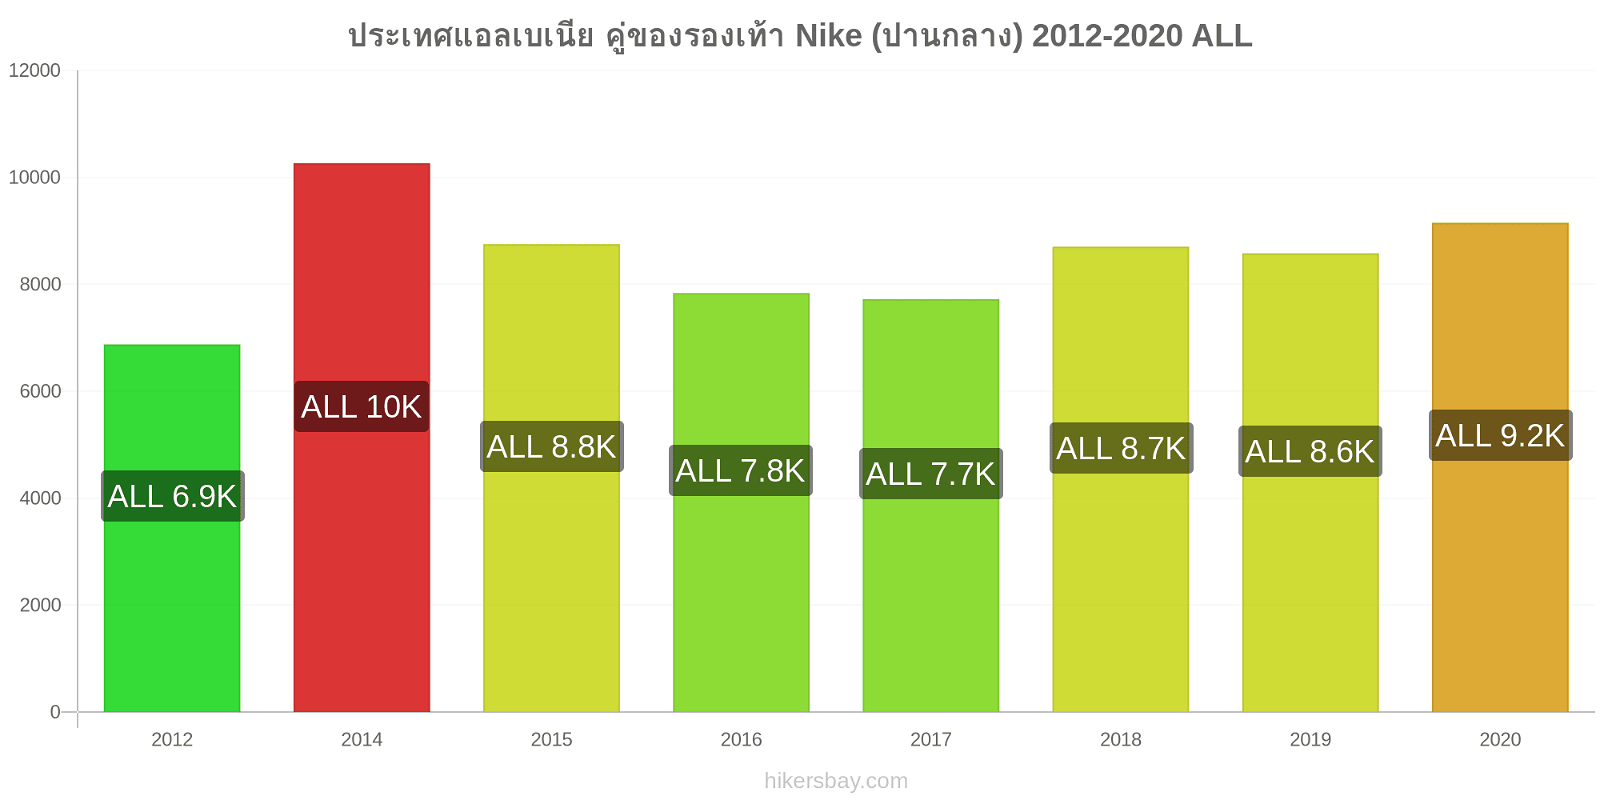 ประเทศแอลเบเนีย การเปลี่ยนแปลงราคา คู่ของรองเท้า Nike (ปานกลาง) hikersbay.com